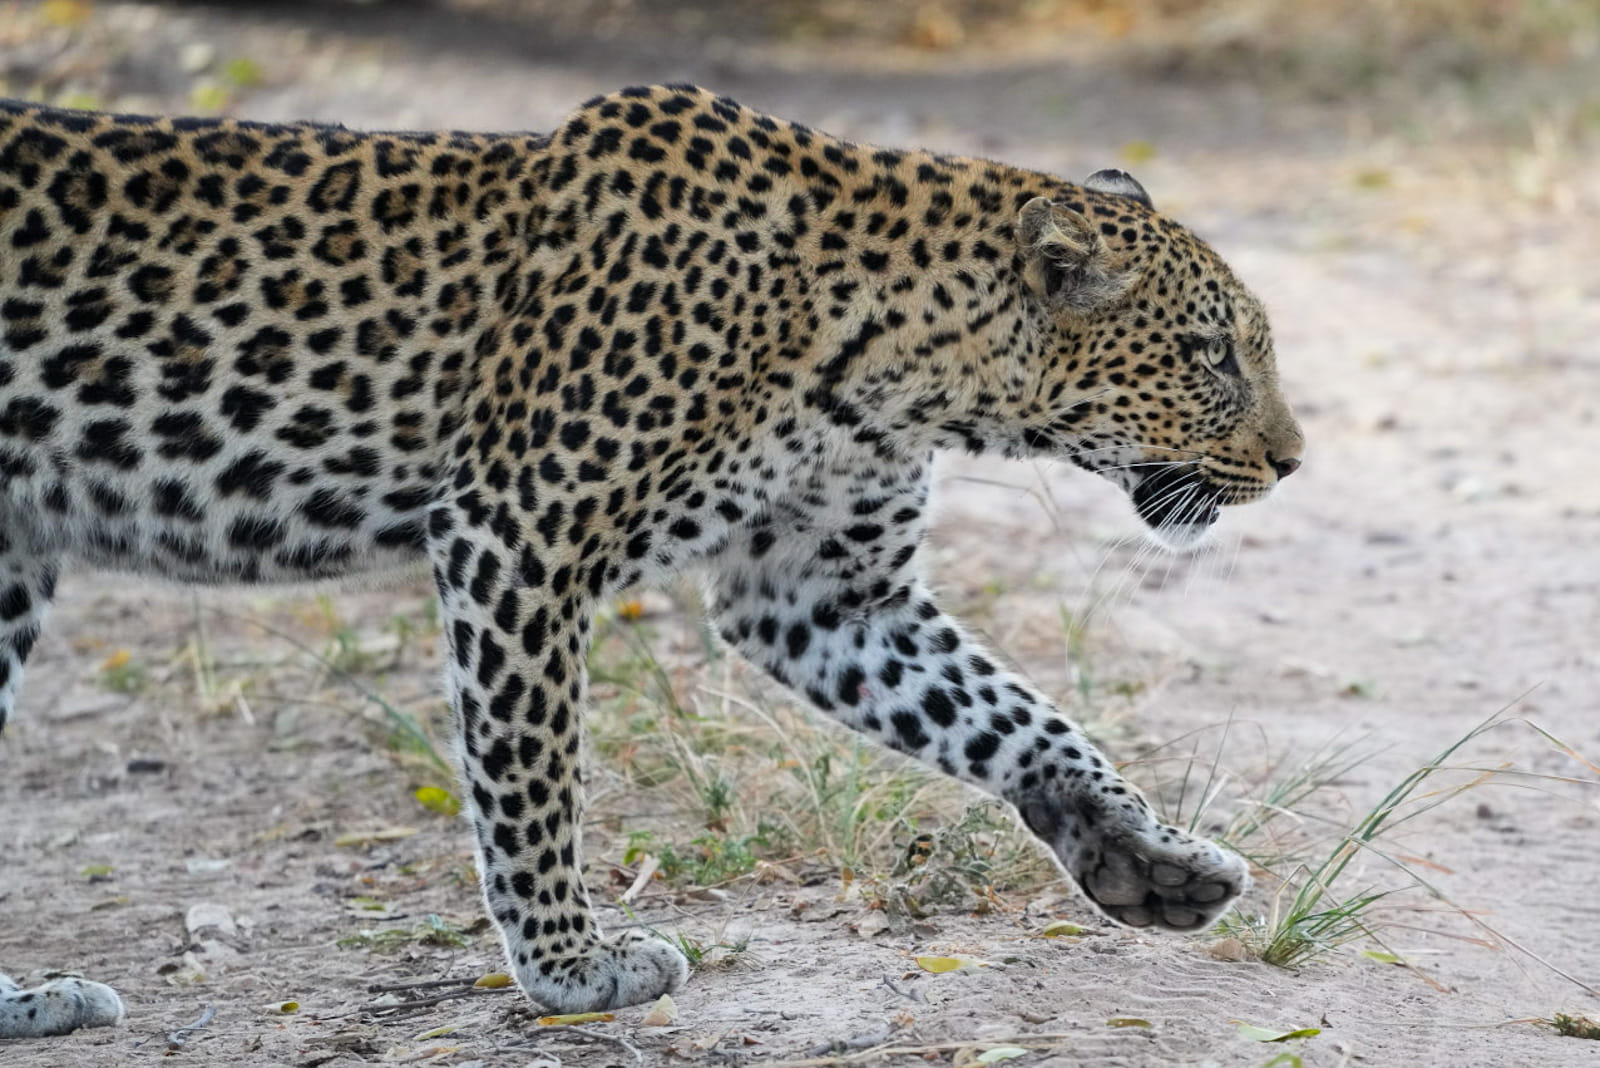 Heute Morgen haben wir bereits in der ersten Stunde eine Leopardendame mit ihrem acht Monate alten Kind in der Wildnis angetroffen.